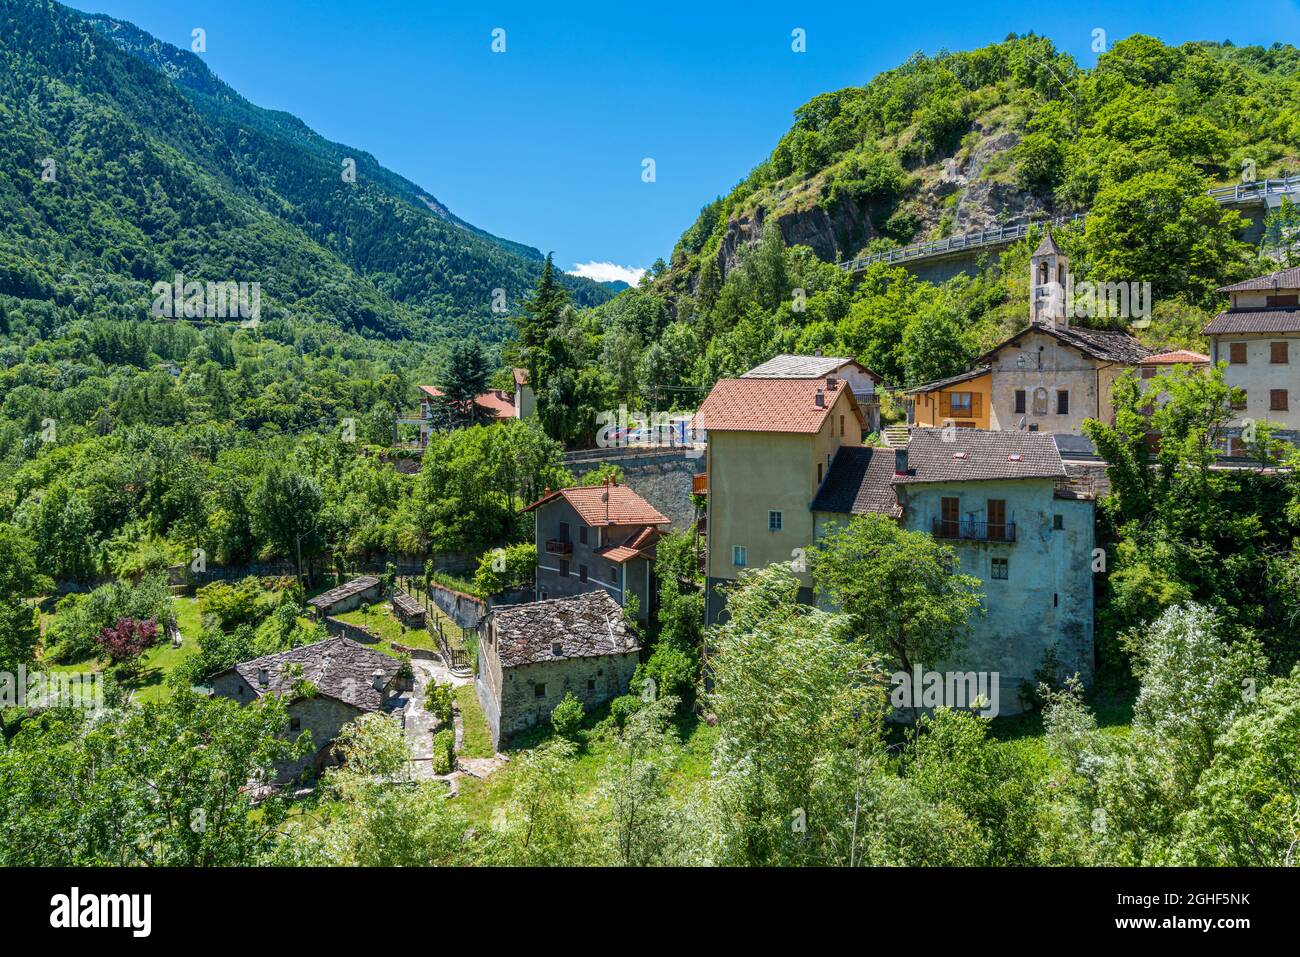 Il pittoresco villaggio di Exilles, nella Valle di Susa. Provincia di Torino, Piemonte, Italia settentrionale. Foto Stock